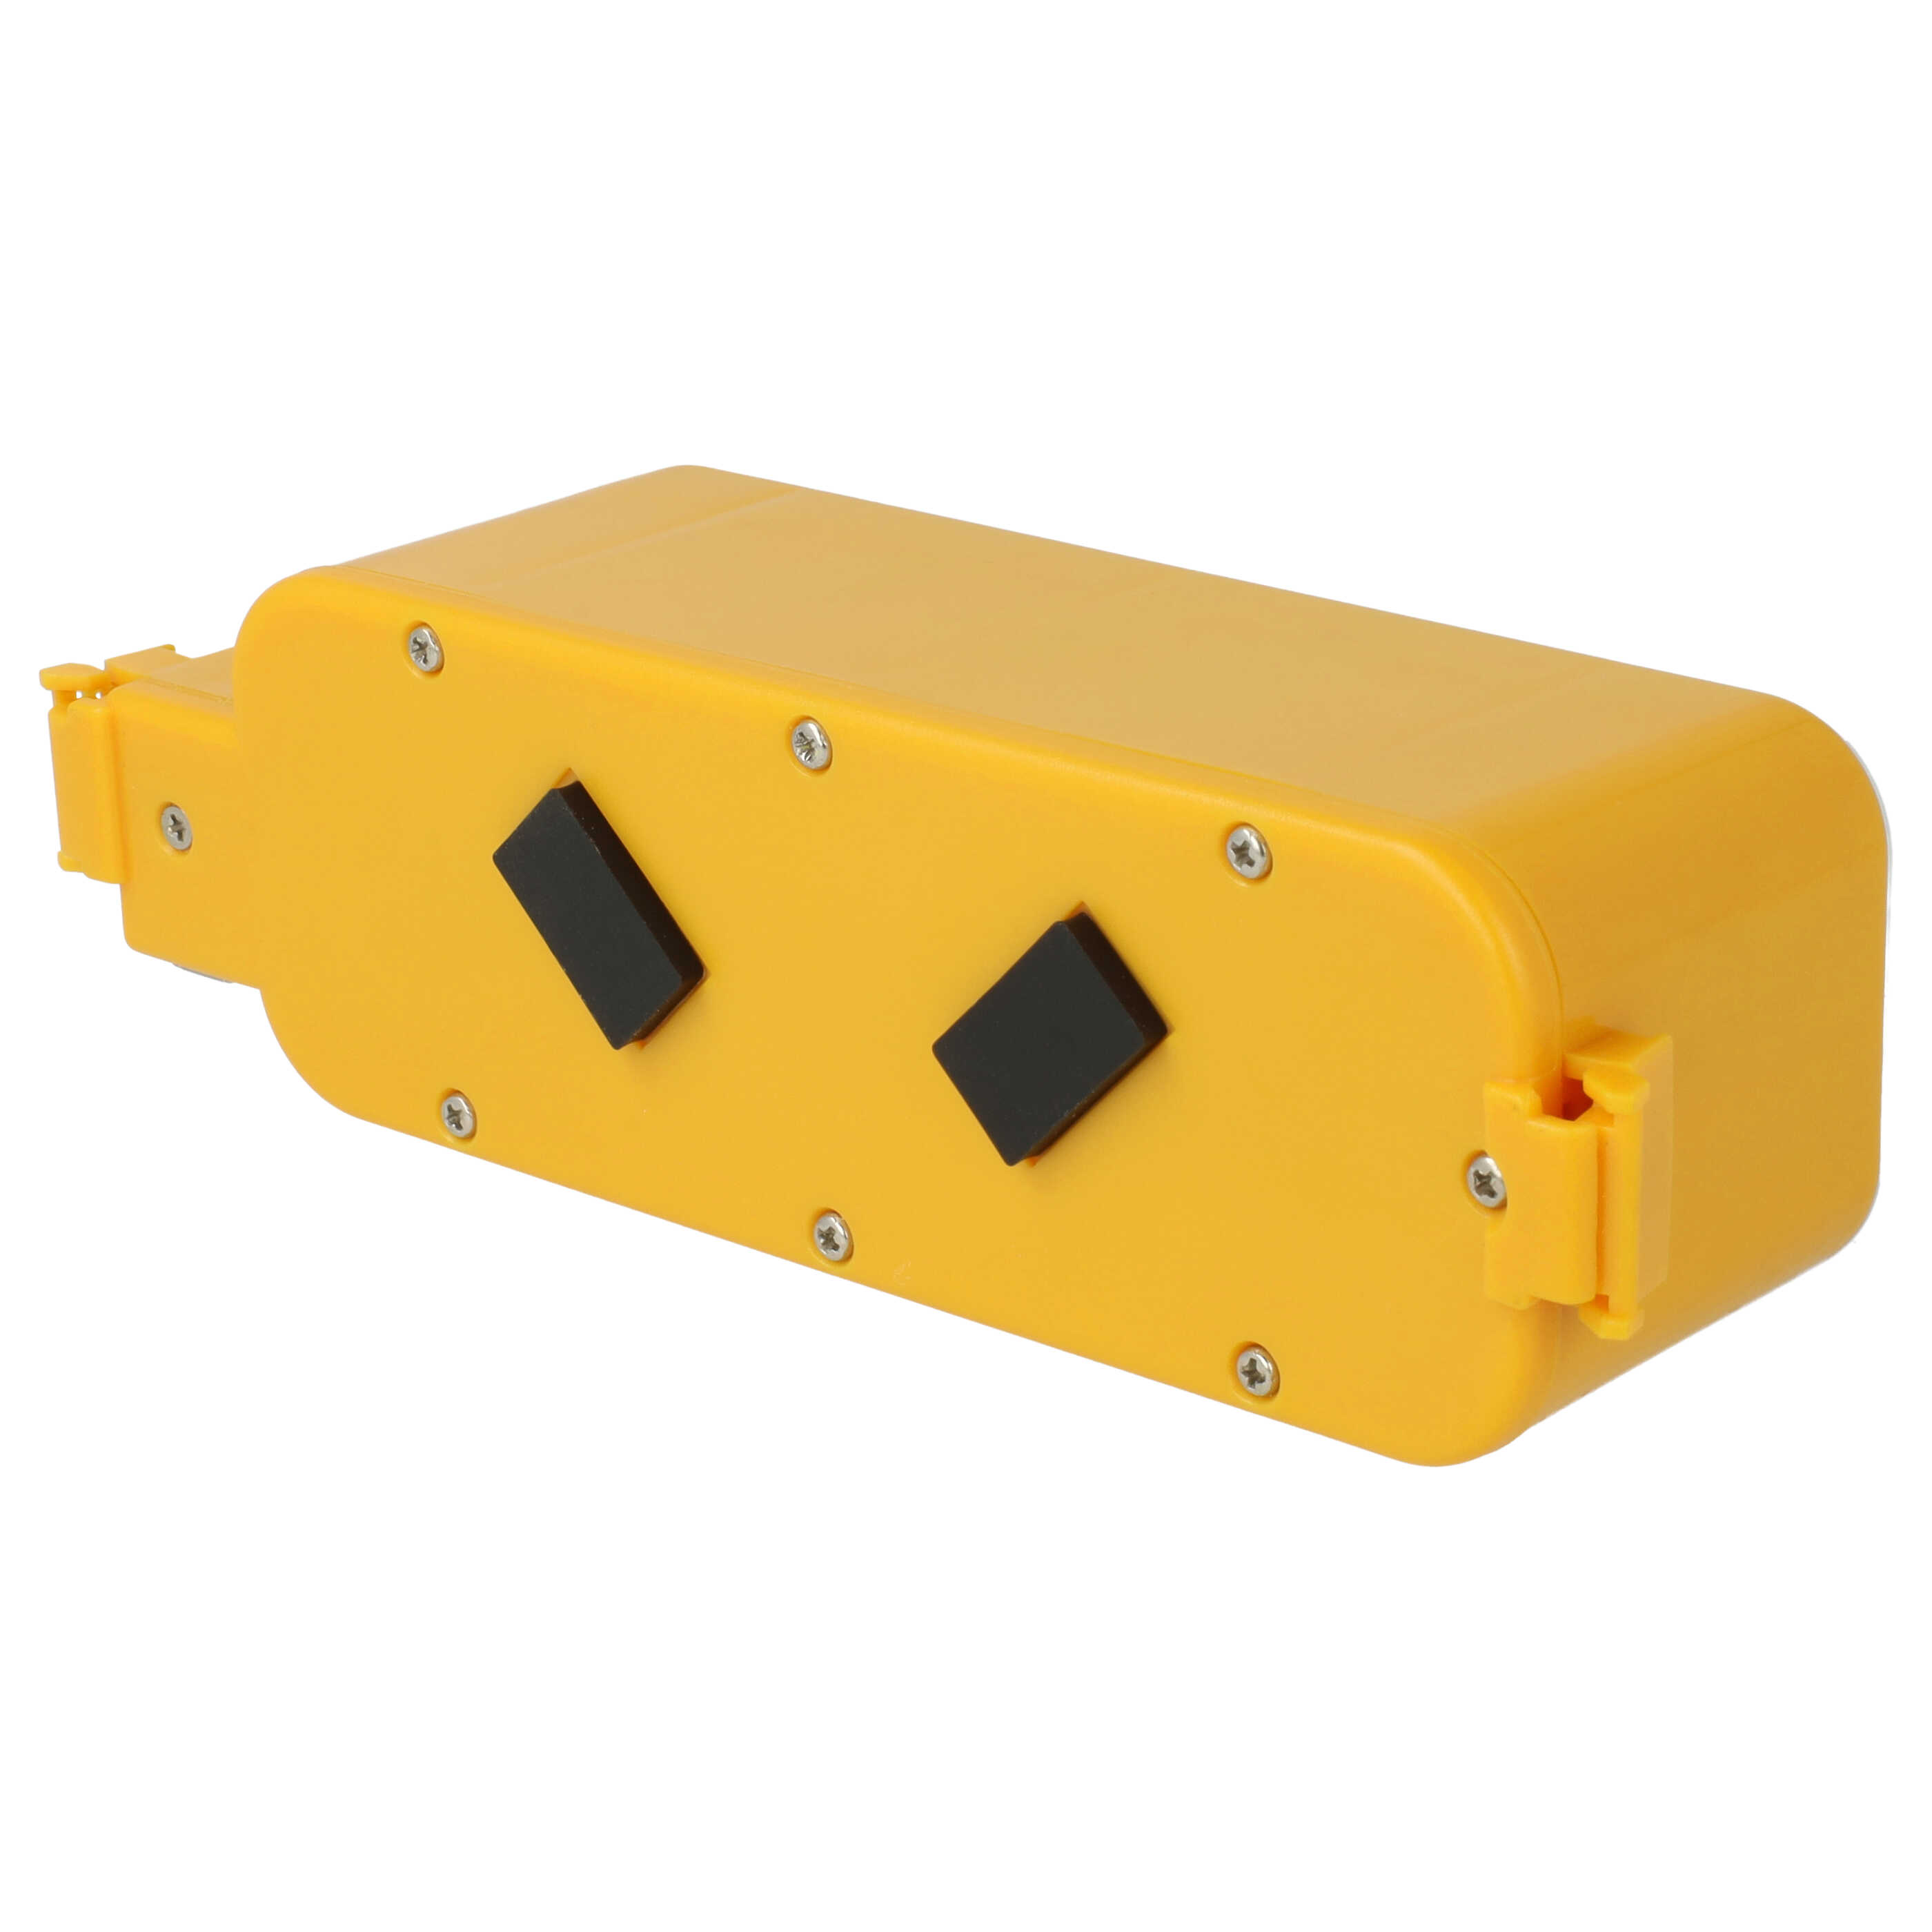 Batteria sostituisce APS 4905, NC-3493-919, 11700, 17373 per aspirapolvere iRobot - 3000mAh 14,4V NiMH giallo